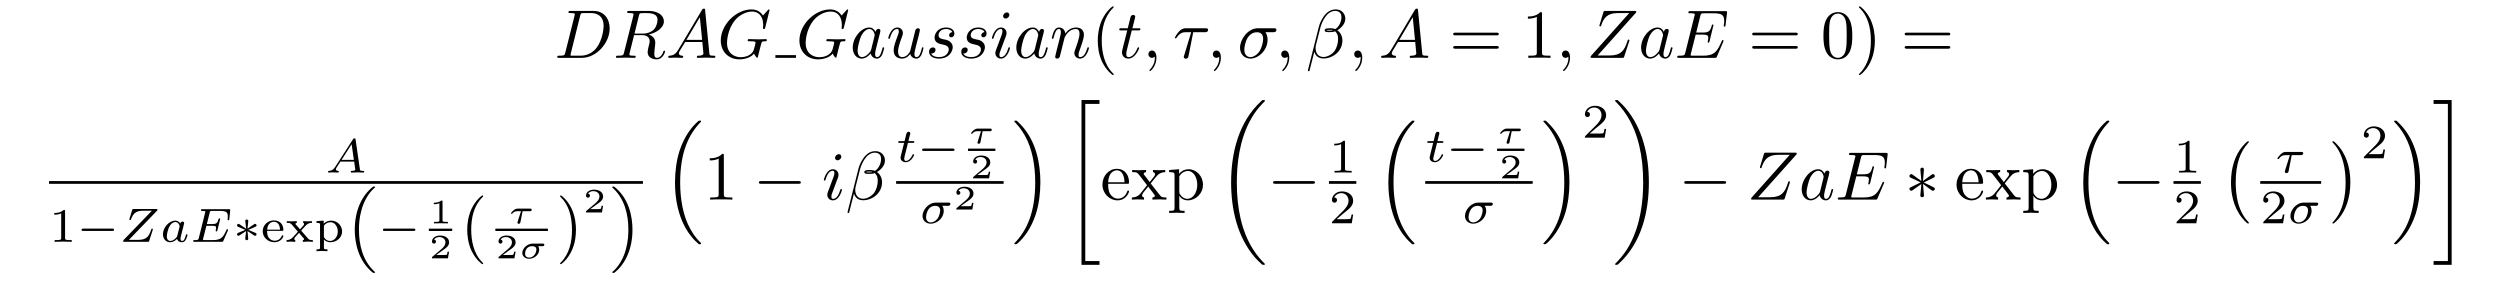 Ecuación matemática para la distribución gaussiana DRAG con los parámetros t, tau, sigma, beta, A=1 y ZaE=0.